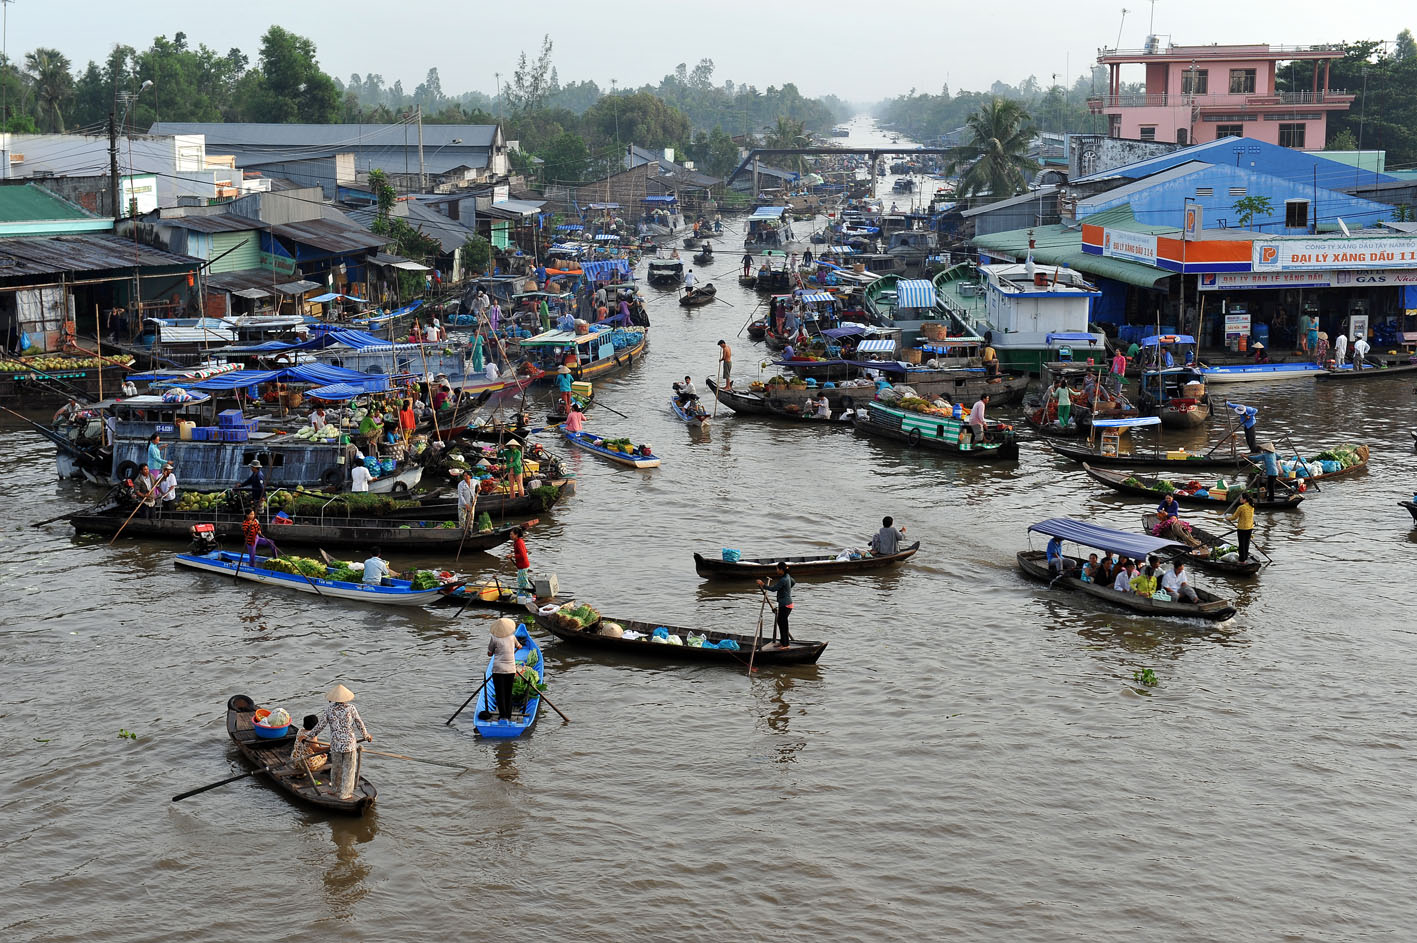 Chính phủ ban hành Chương trình hành động phát triển kinh tế - xã hội vùng đồng bằng sông Cửu Long